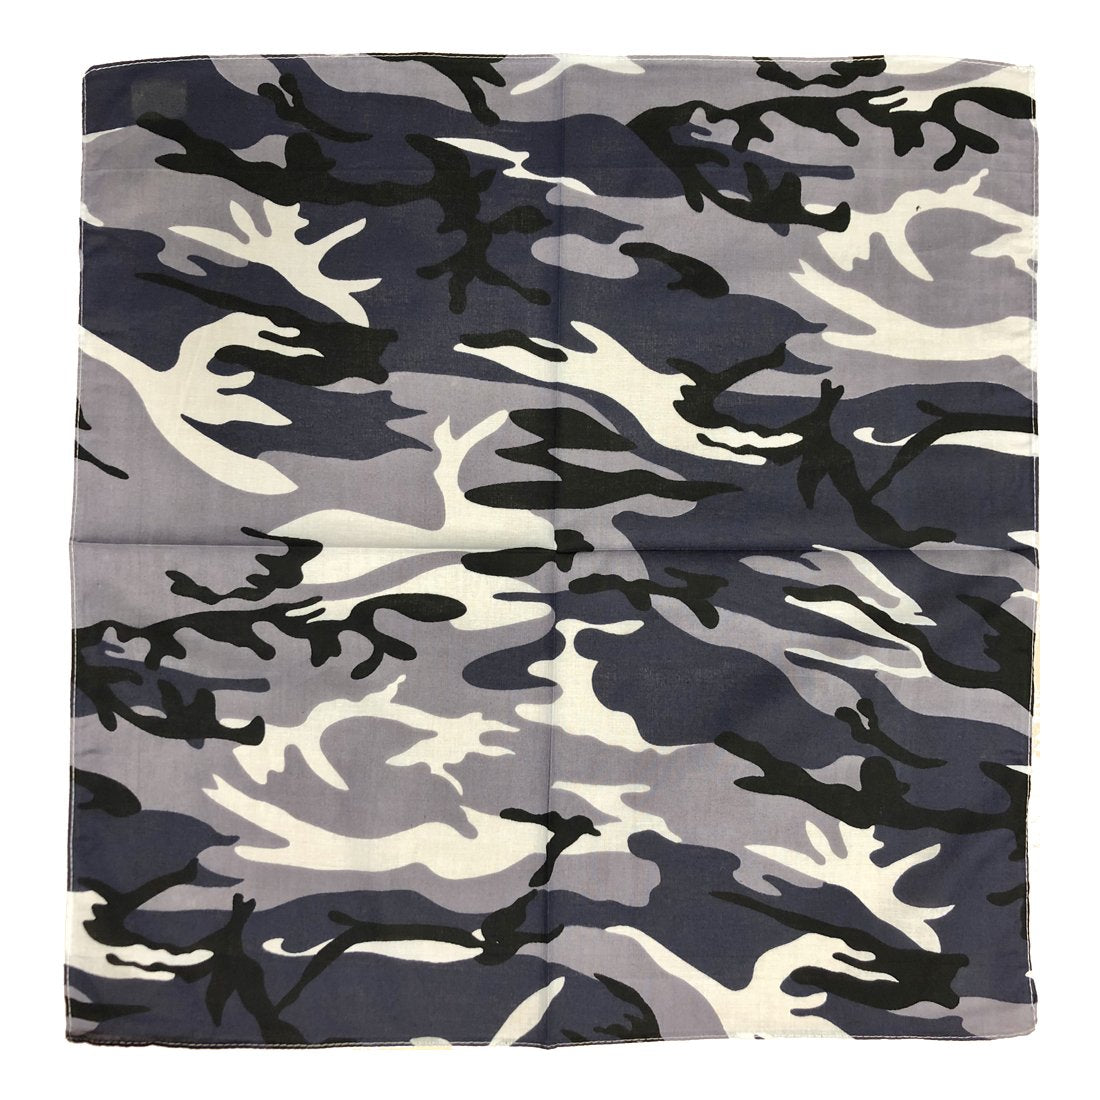 Grey camouflage bandanas from BandanaShop.ca